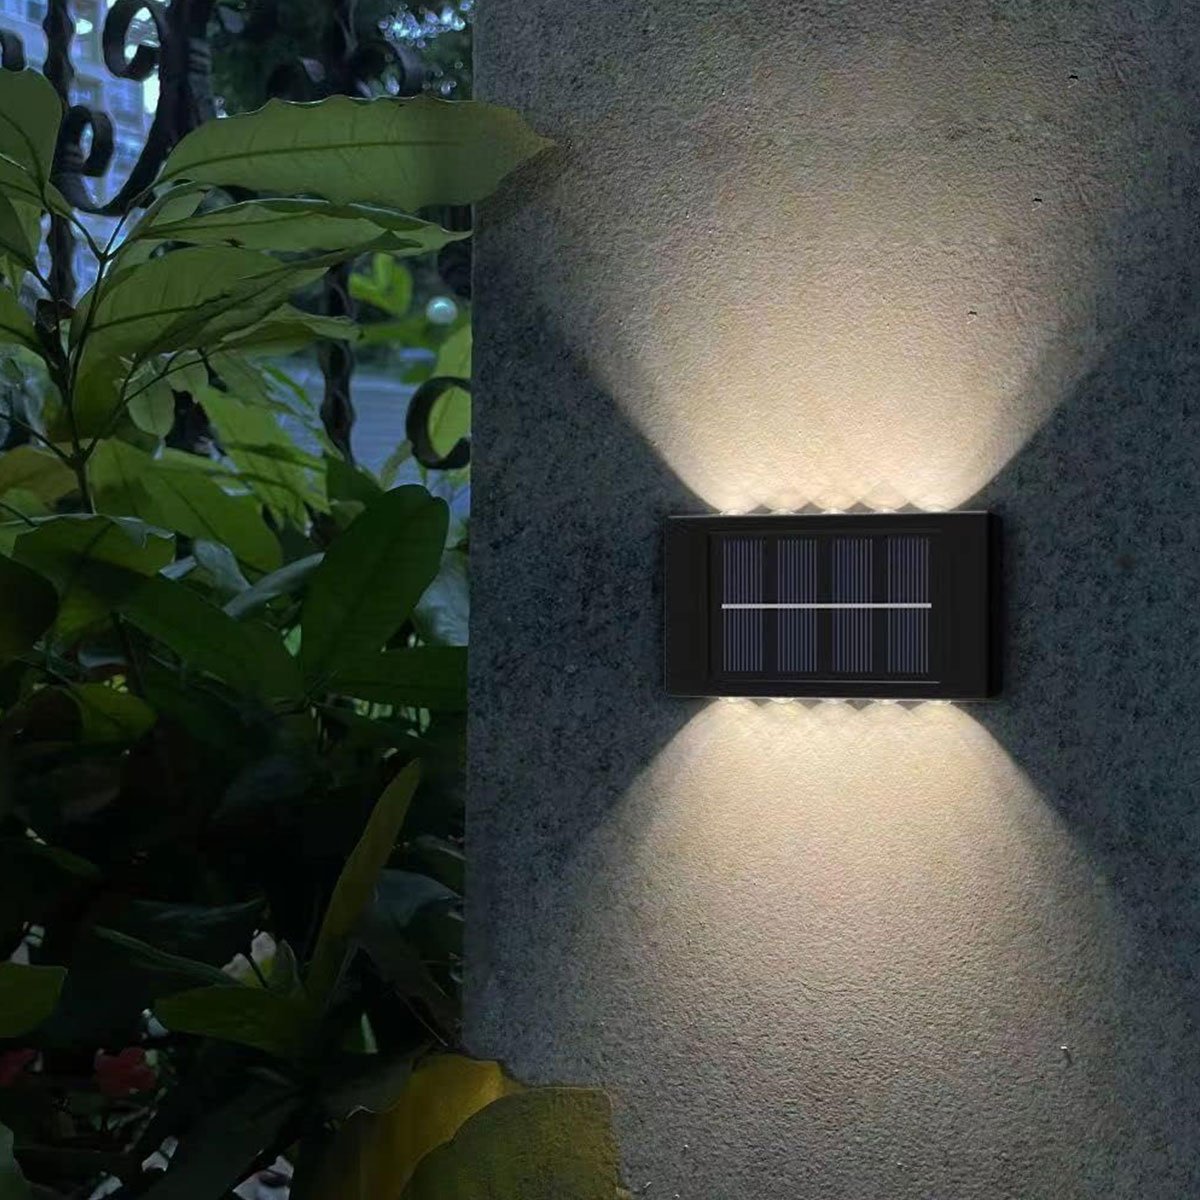 Arandela Solar Spot Balizador Parede Luminaria Garagem Escada Varanda Quintal Jardim Iluminaçao Segu - 7